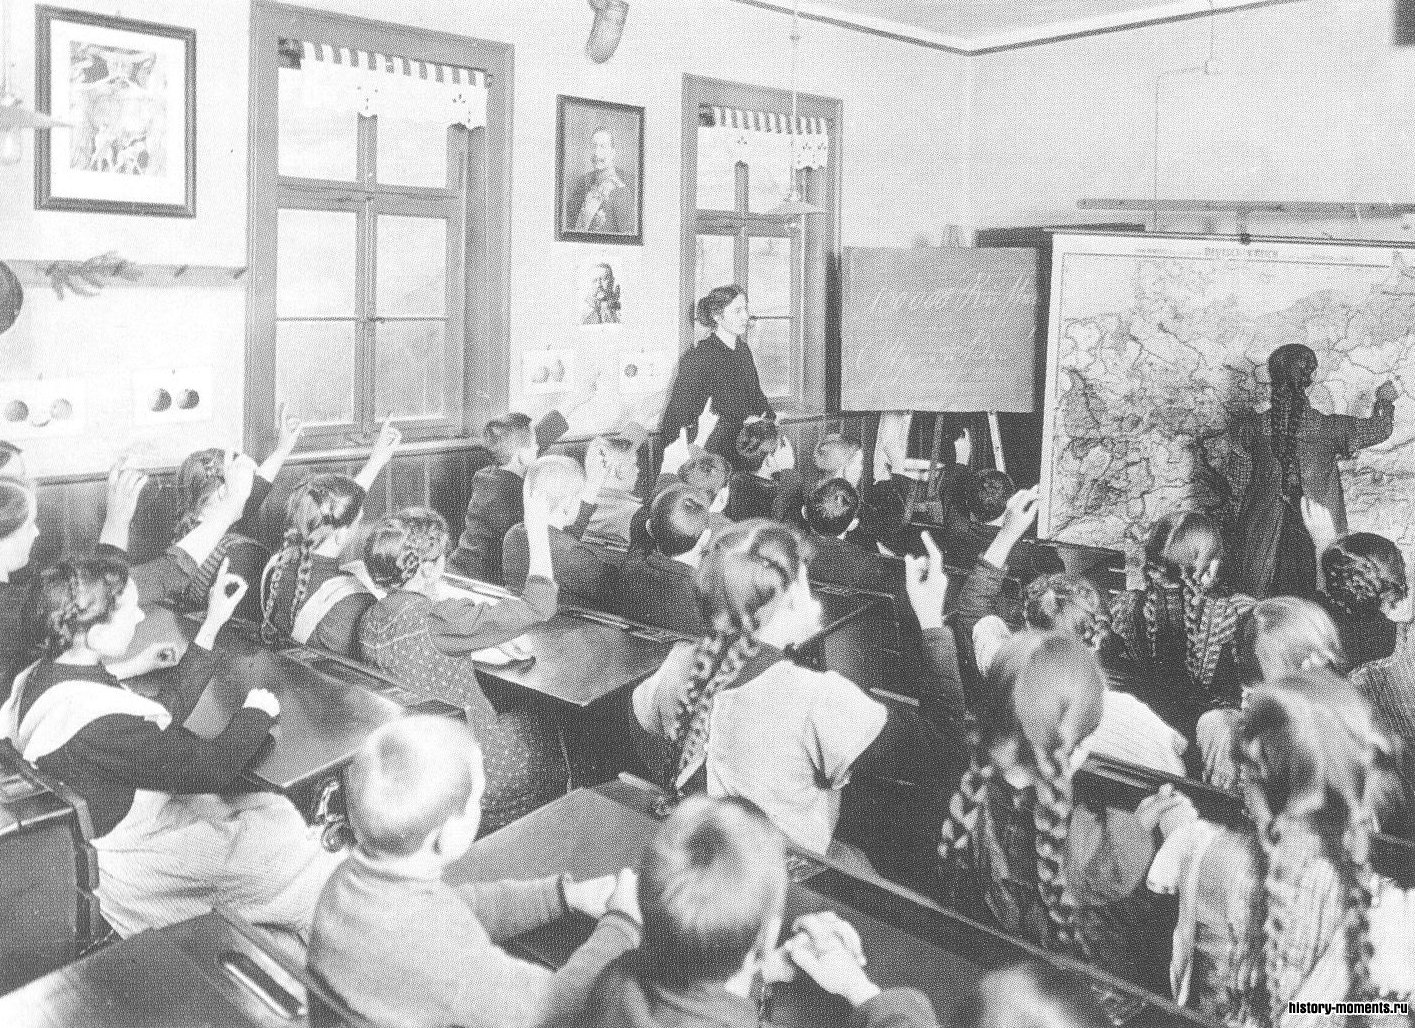 Урок истории в начале Первой мировой войны. Портрет кайзера Вильгельма II смотрит со стены на берлинских школьников, которые смогли воспользоваться благами самой ранней в мире системы государственного школьного образования.